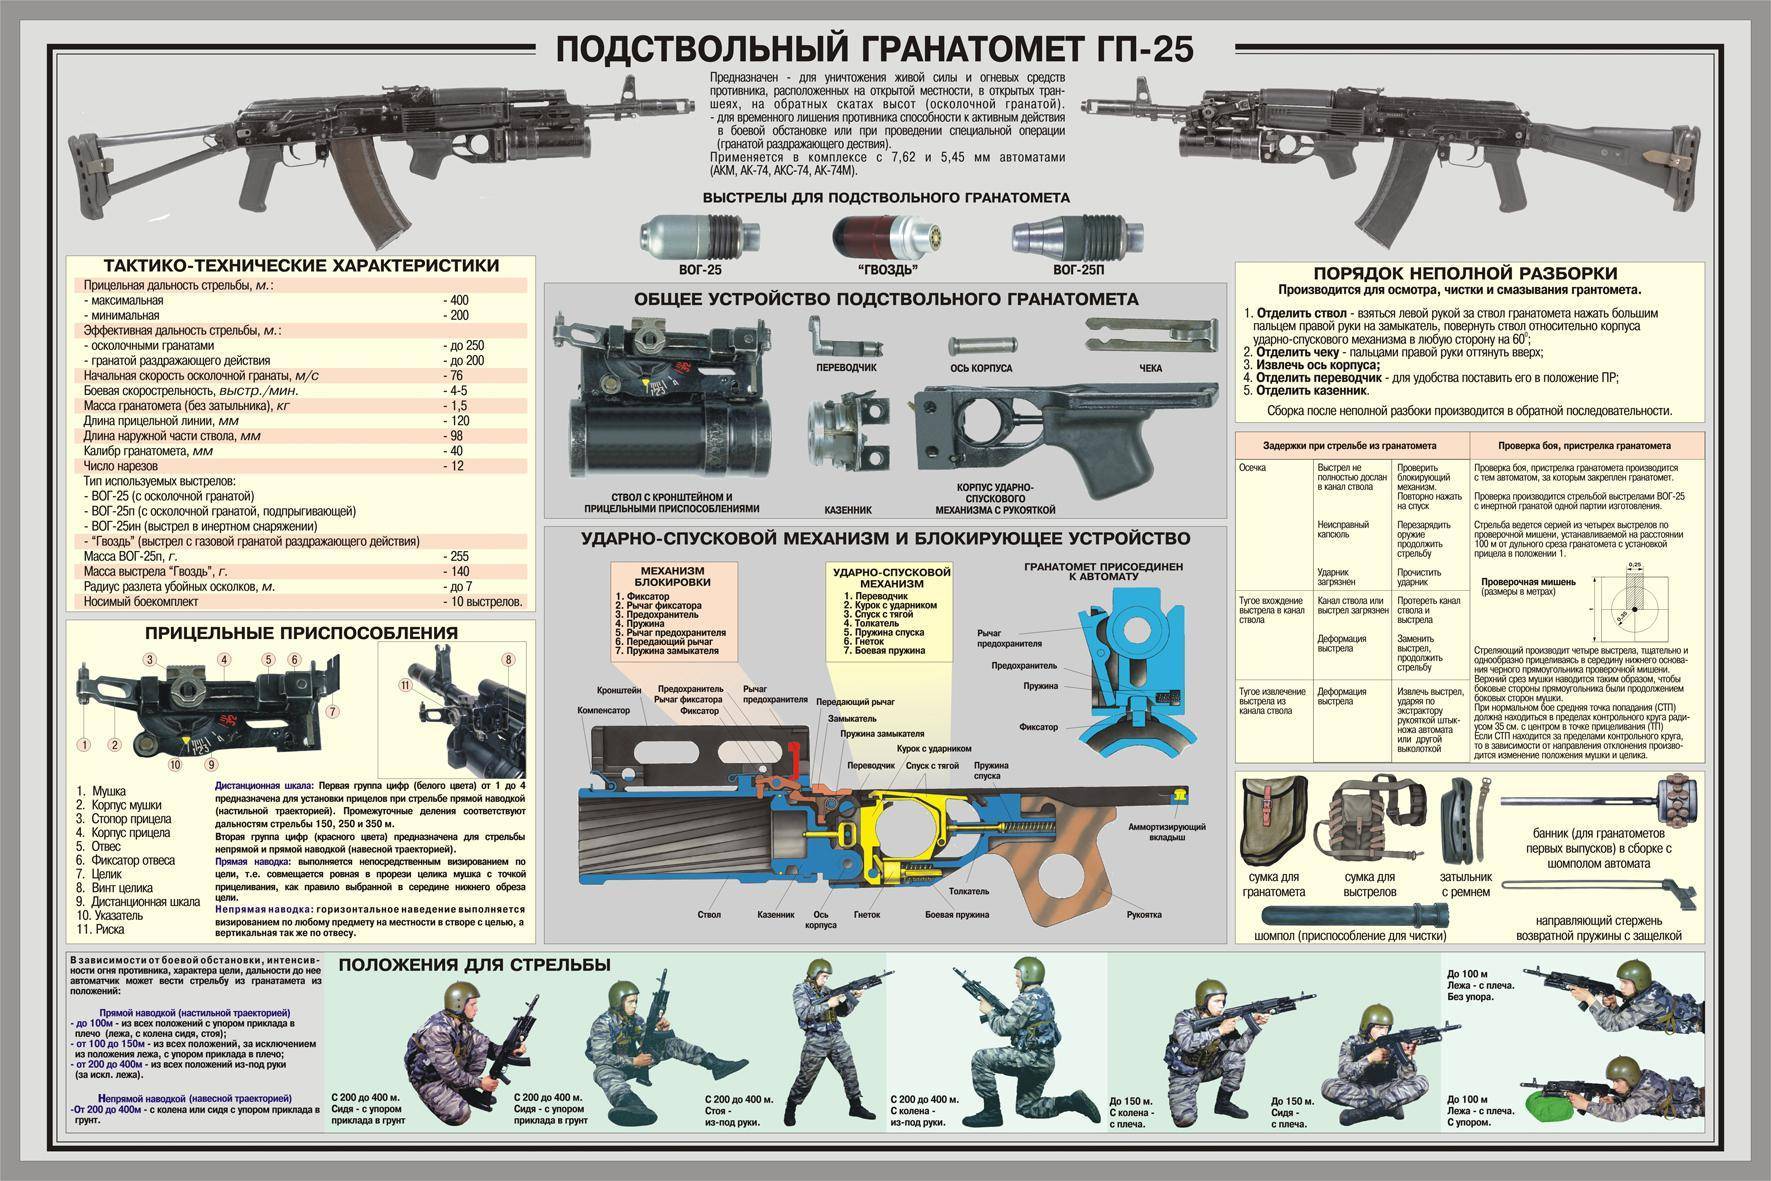 Российская снайперская винтовка св-98